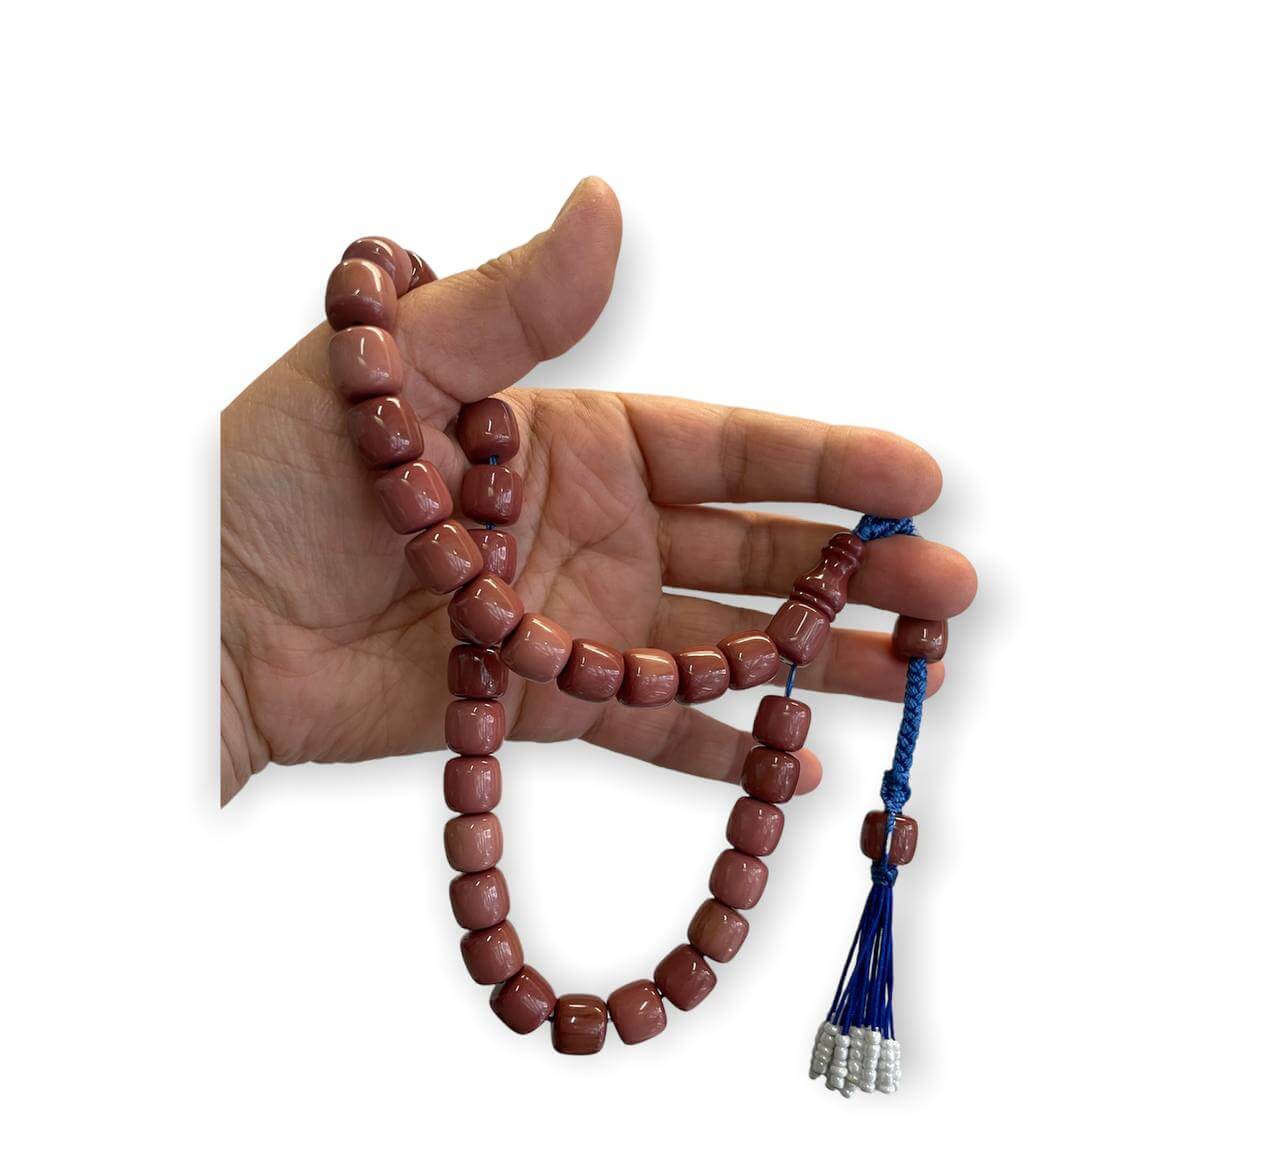 Tesbih, Gebetskette 33 Perlen, einzigartiges Sondermodell, Saray Püskül, Farbe rosa, Bernstein, Kehribar Tespih - Tesbih Mit Namen